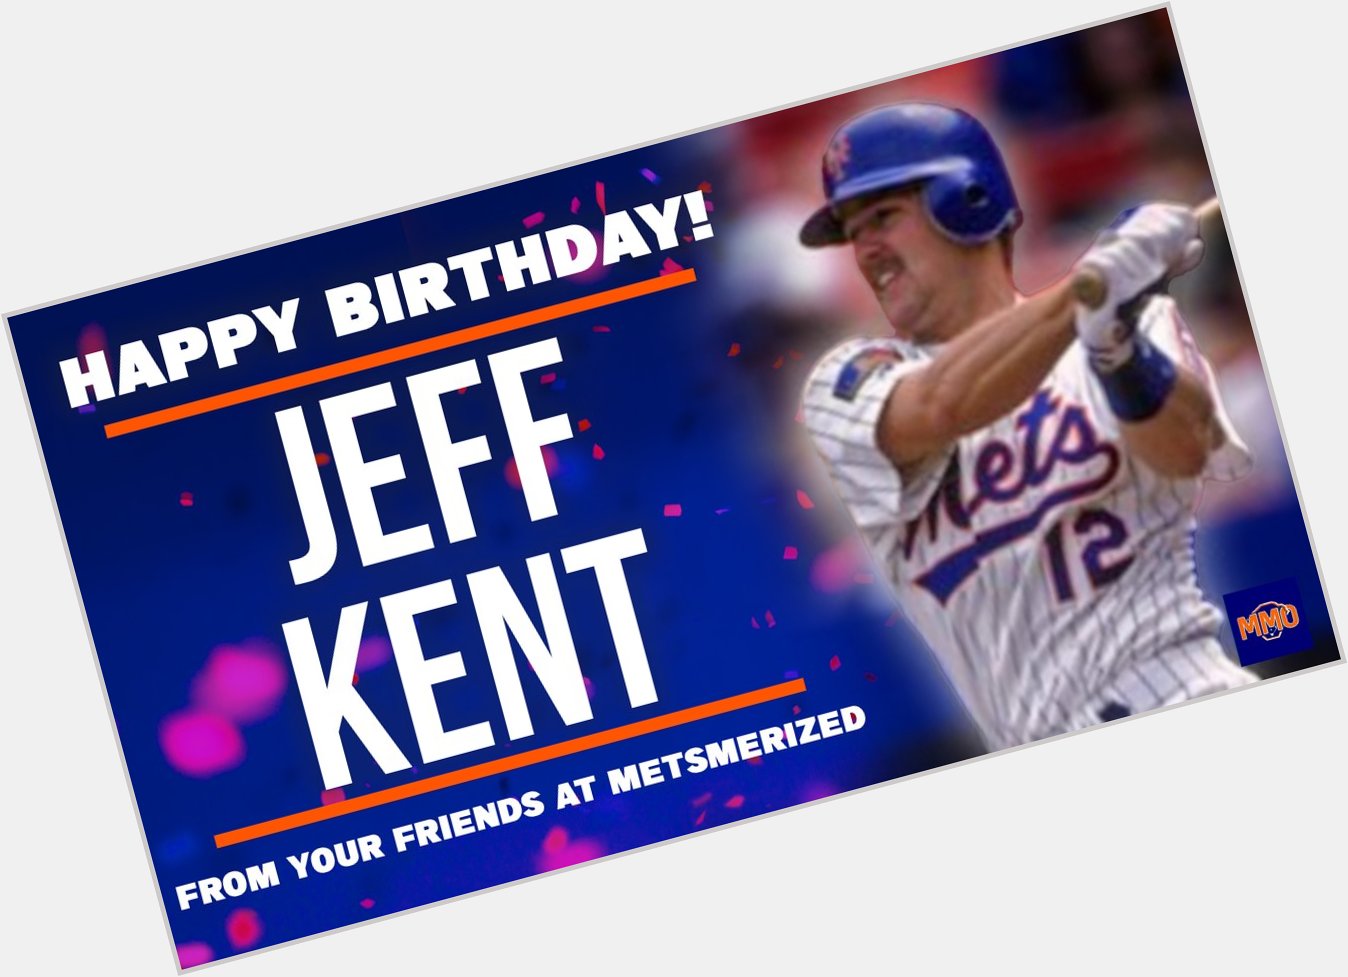 Happy Birthday to former Met Jeff Kent! 